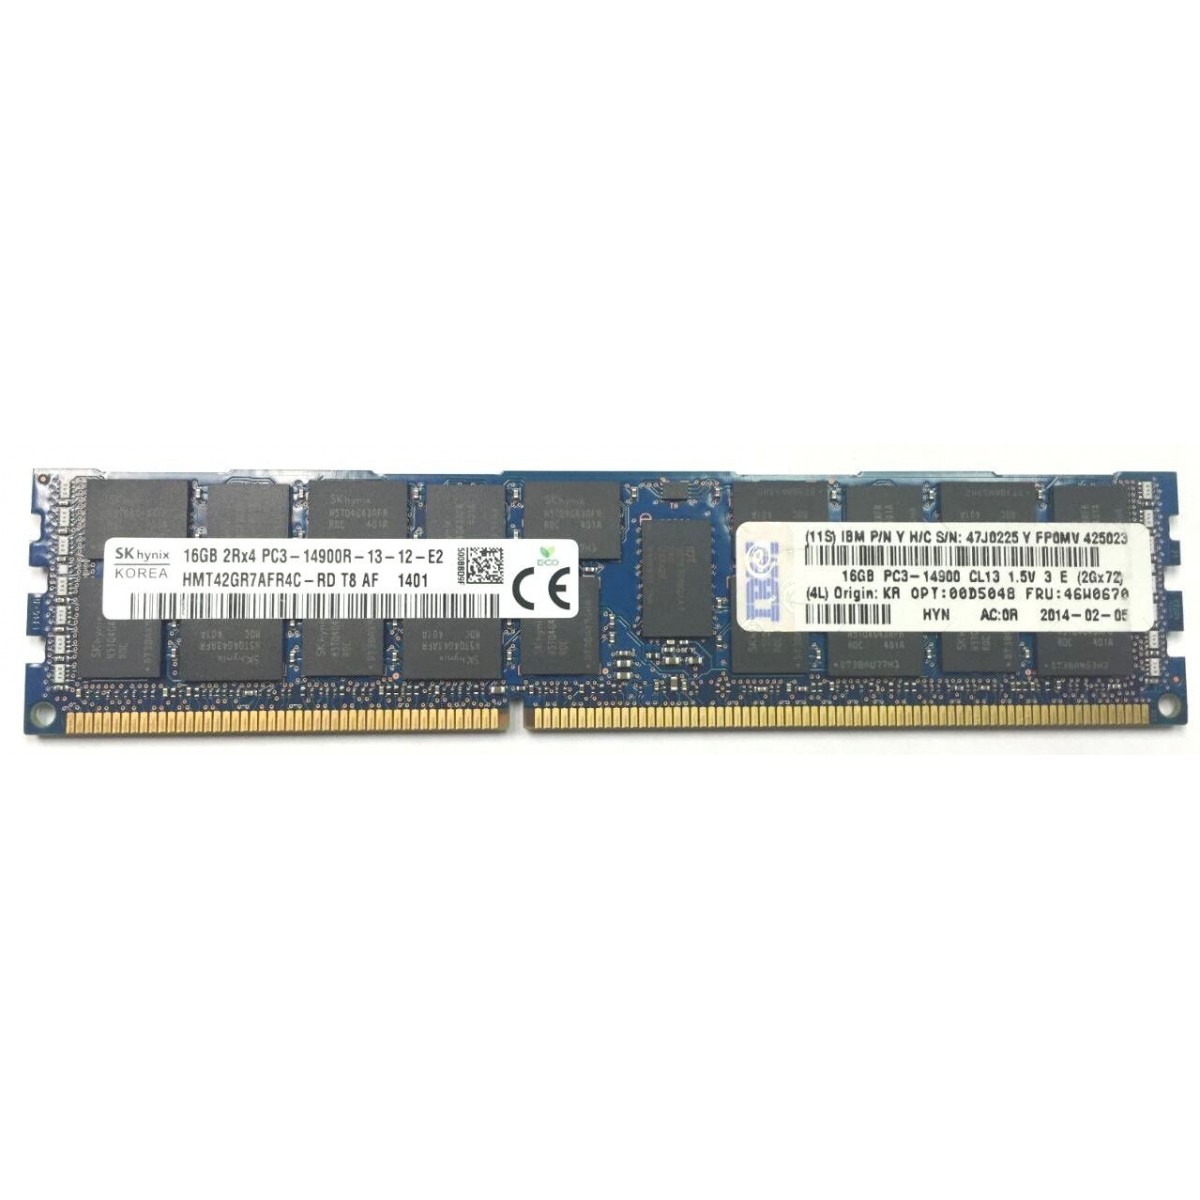 PAMIEC IBM 16GB 2Rx4 PC3-14900R ECC 47J0225